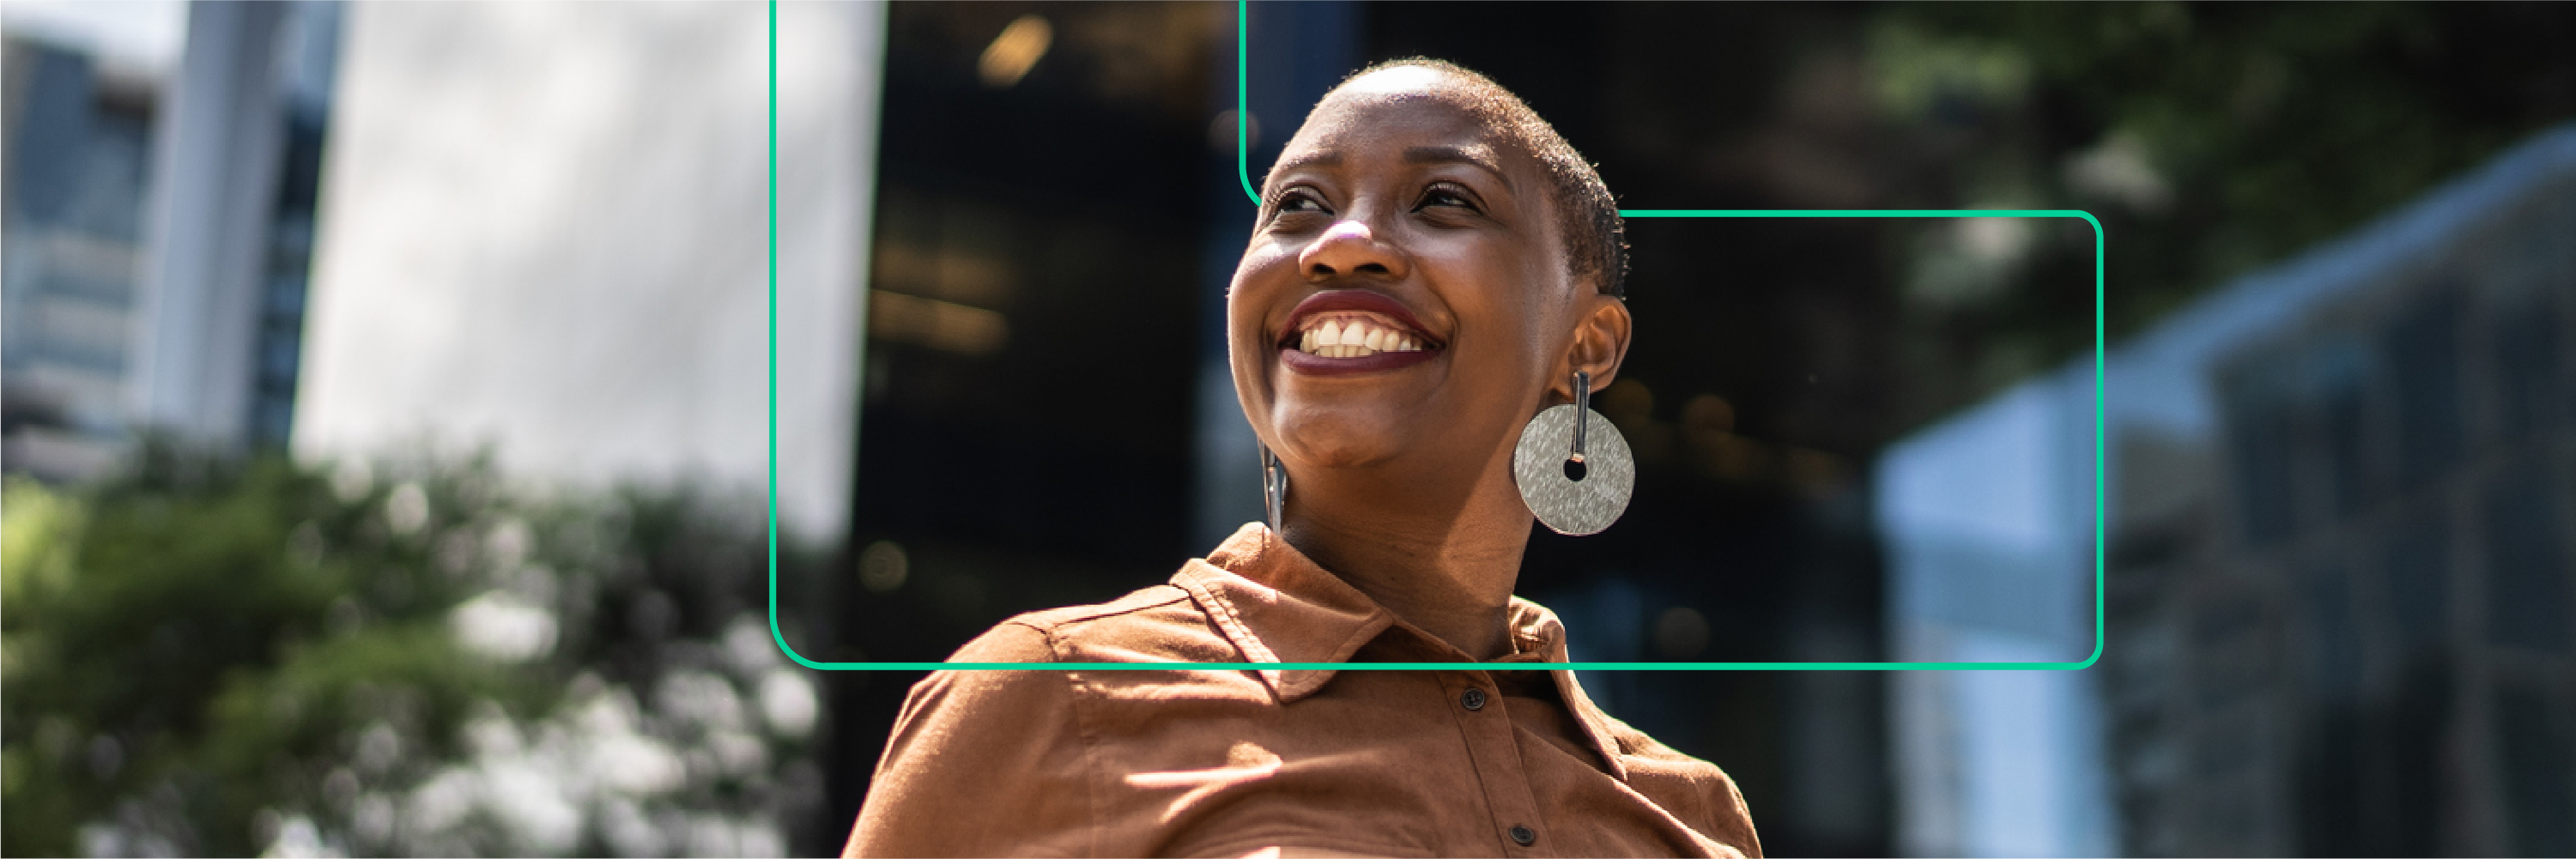 一位黑人女子麵帶微笑的相片，看著太陽。橫幅中還包含方括號，這個符號通常與程式設計相關，並由 Women Techmaker 採用的符號，讓女性得以突破預期並推動下一個產業發展，進而擴大規範範圍並重心產業脈動。